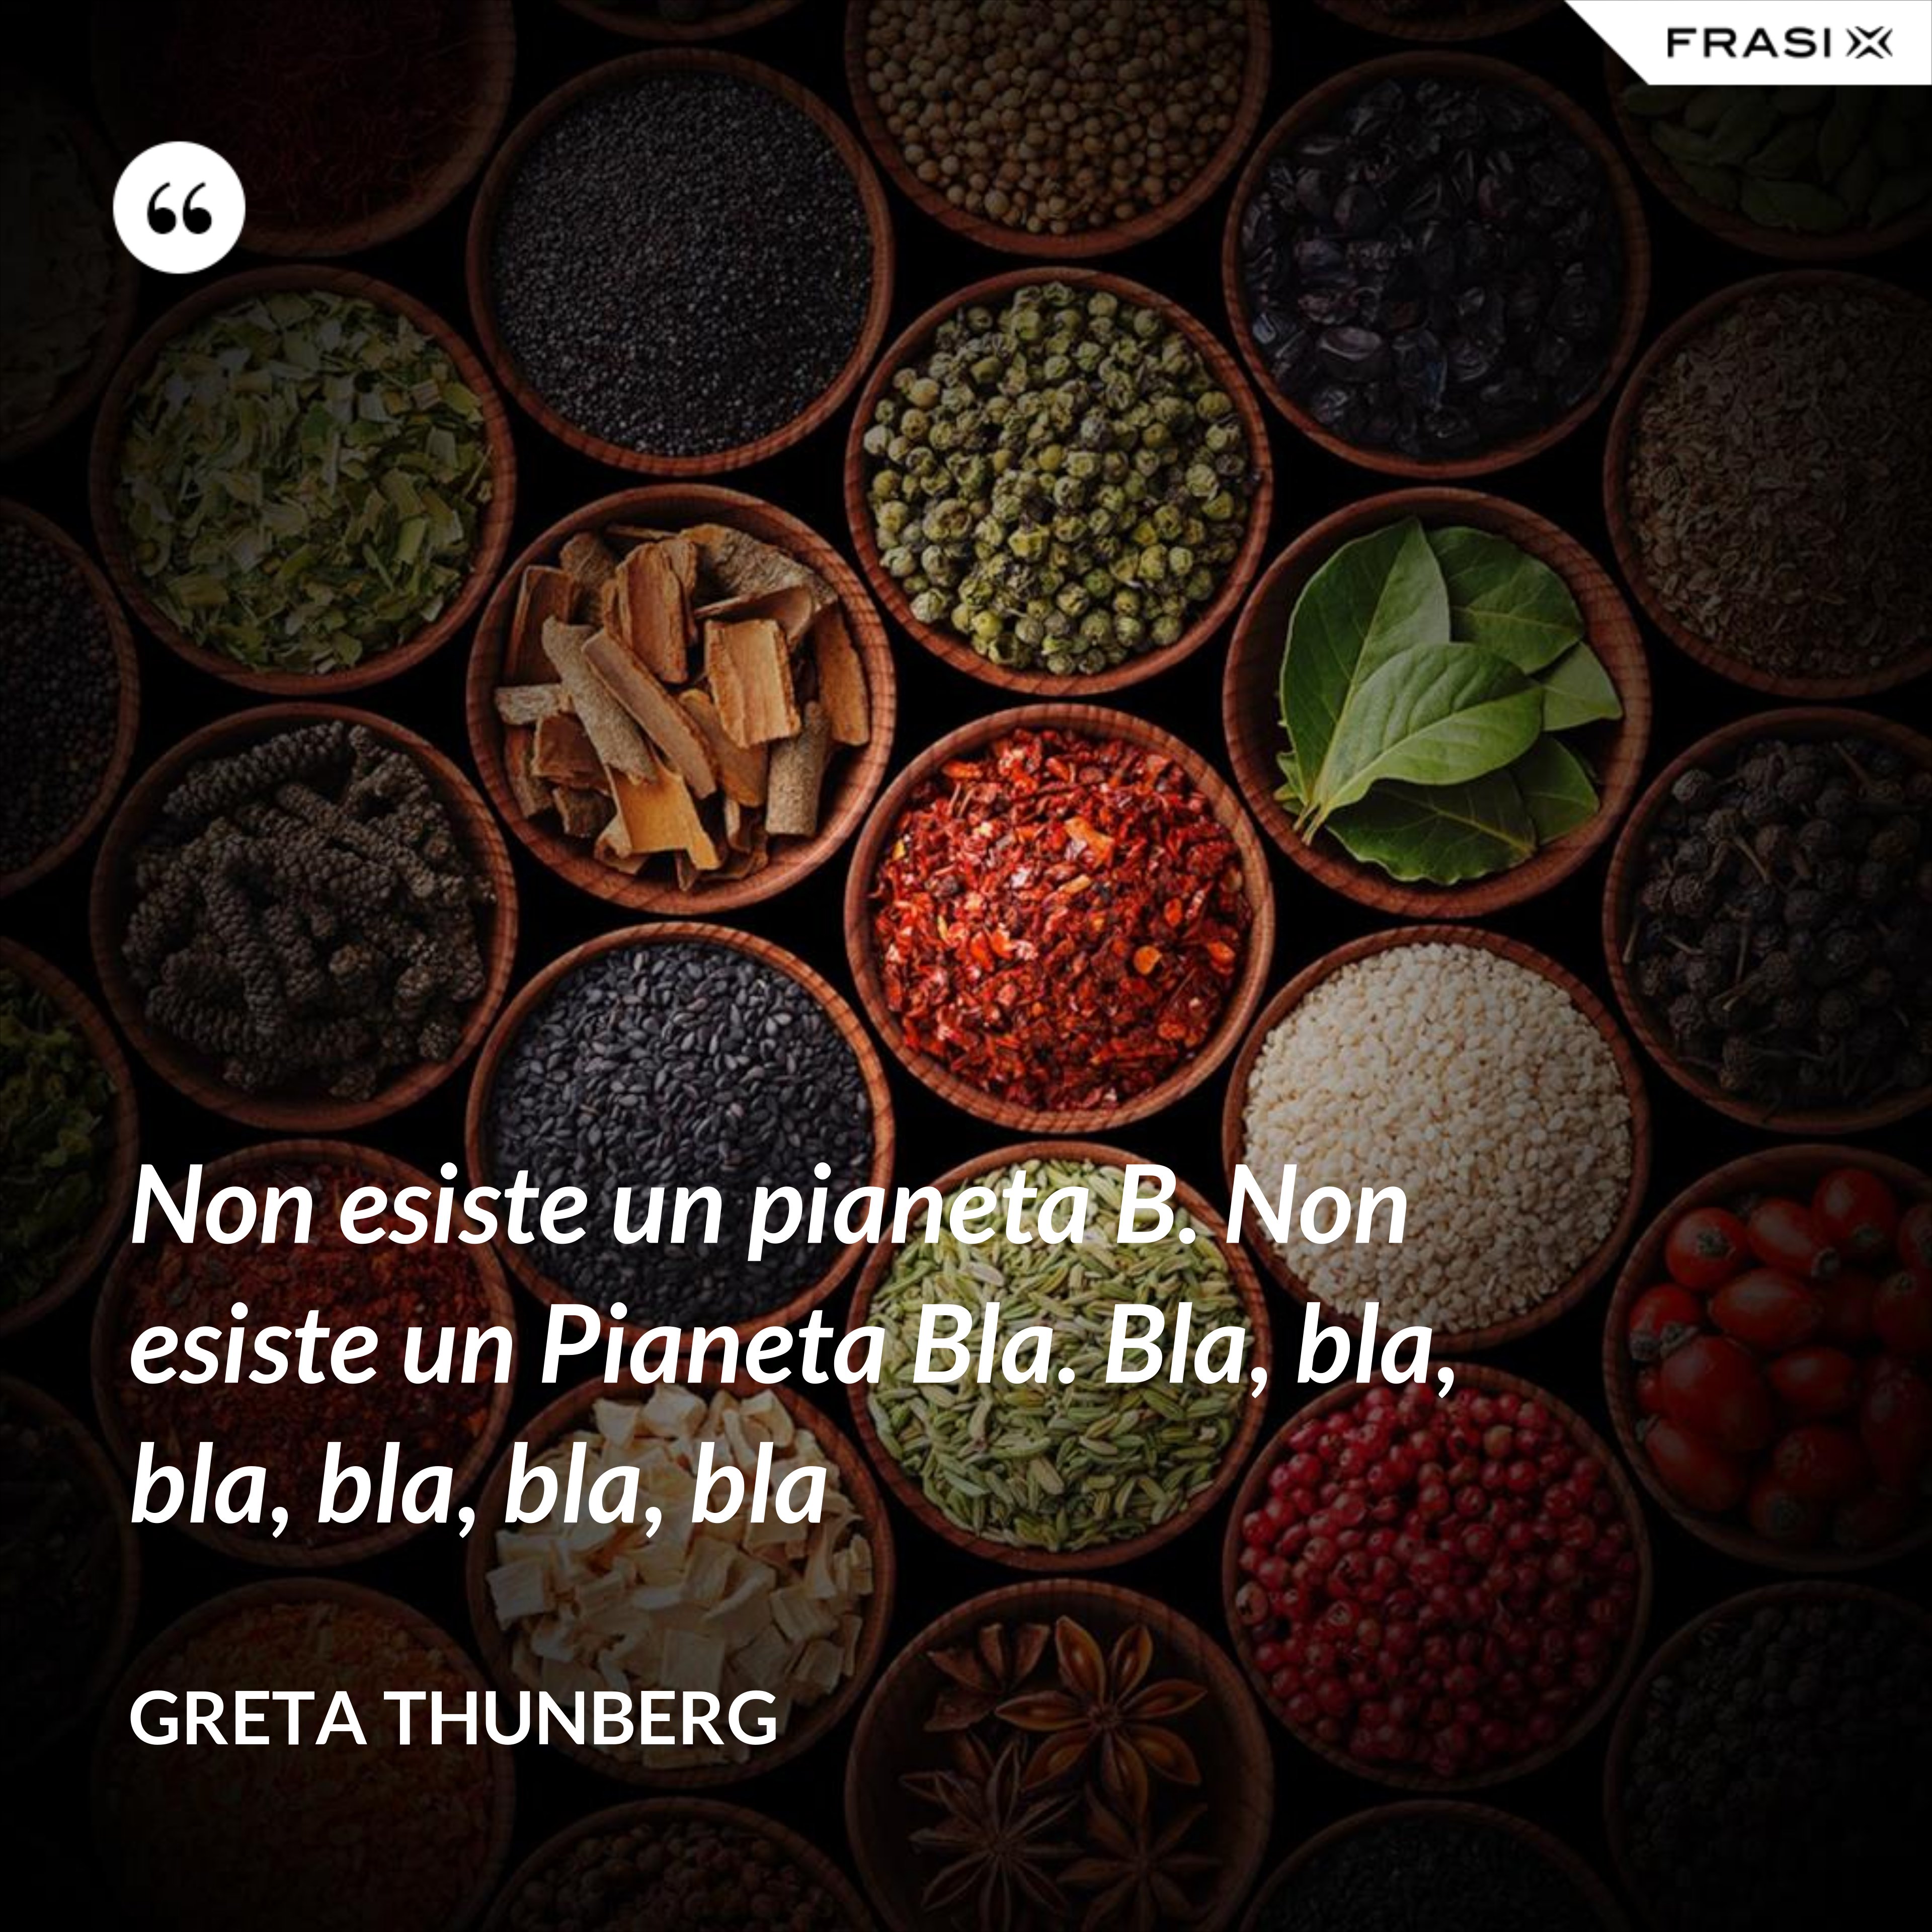 Non esiste un pianeta B. Non esiste un Pianeta Bla. Bla, bla, bla, bla, bla, bla - Greta Thunberg